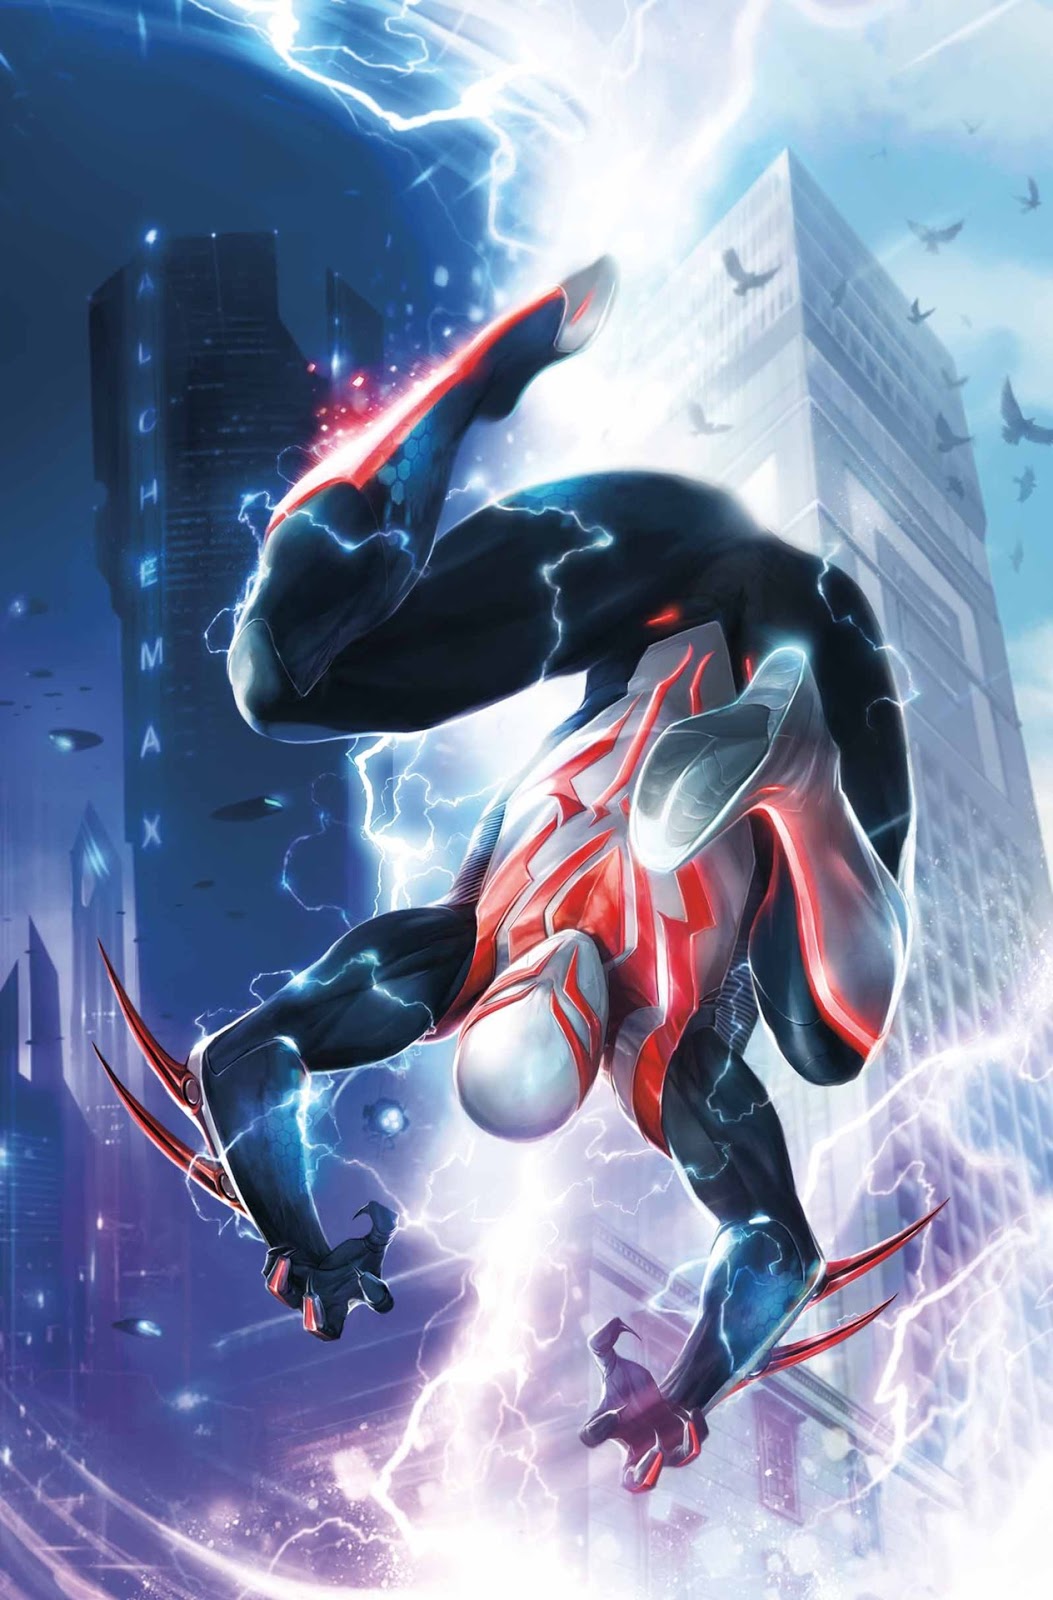 Comicrítico: SPIDERMAN 2099 tendrá nuevo traje, nuevo trabajo y nueva misión